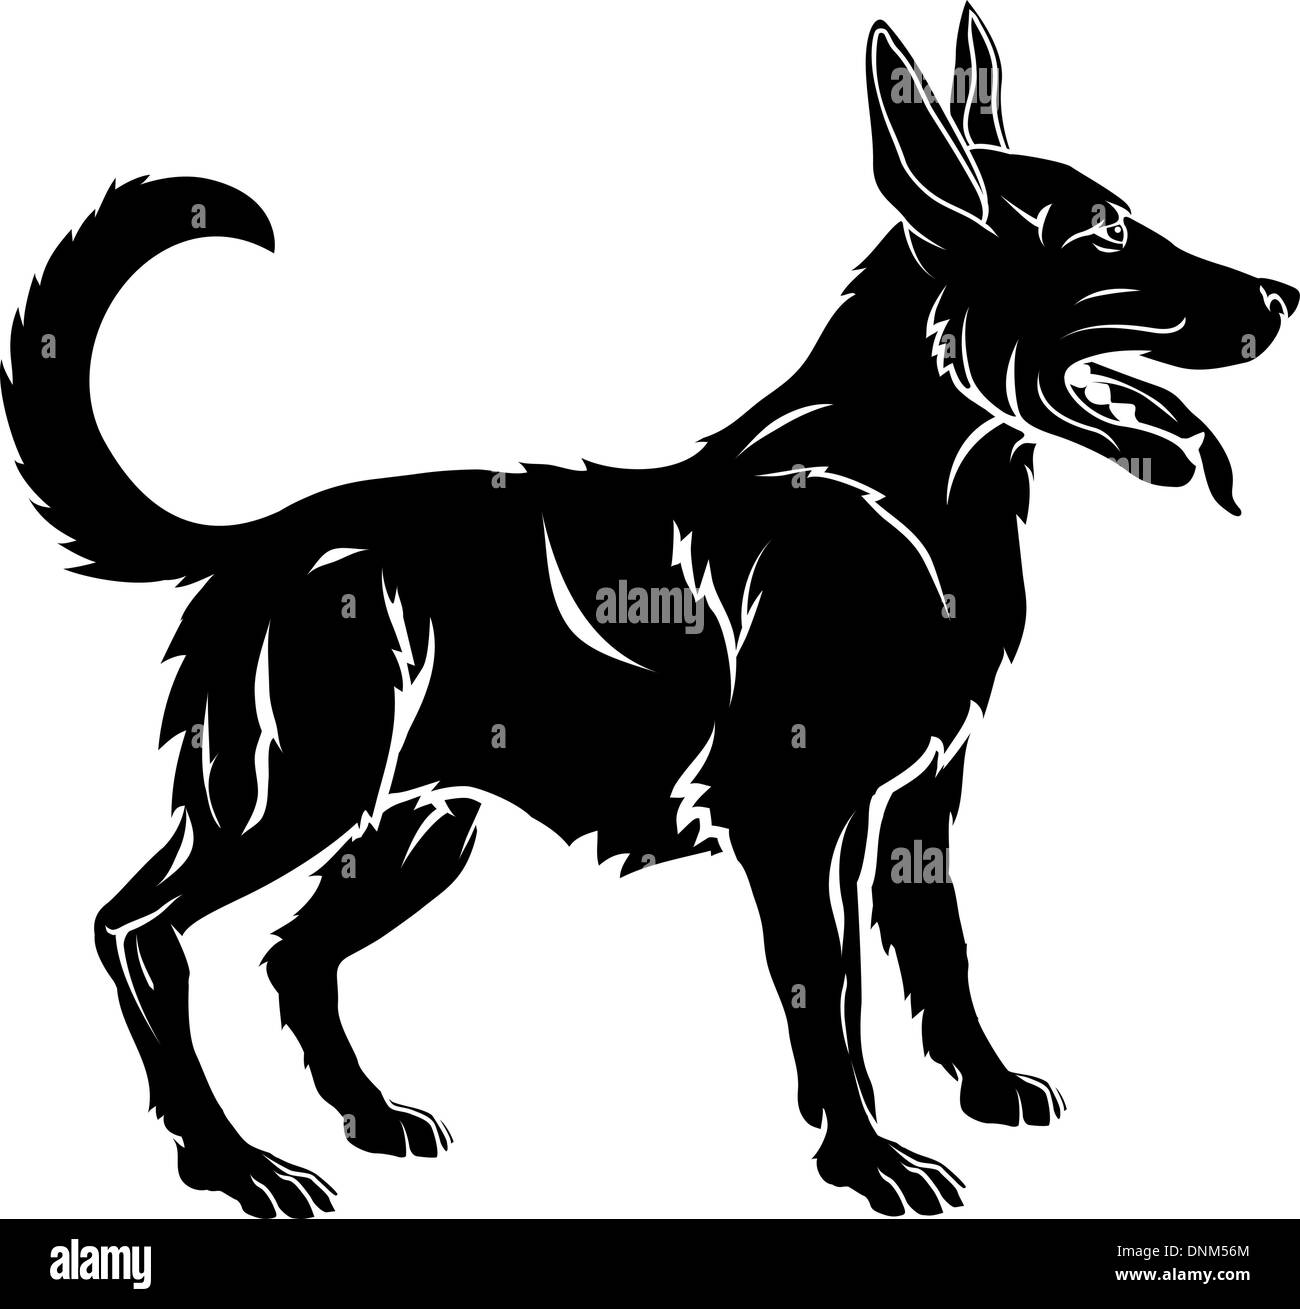 Une illustration d'un chien stylisé peut-être un tatouage de chien Illustration de Vecteur